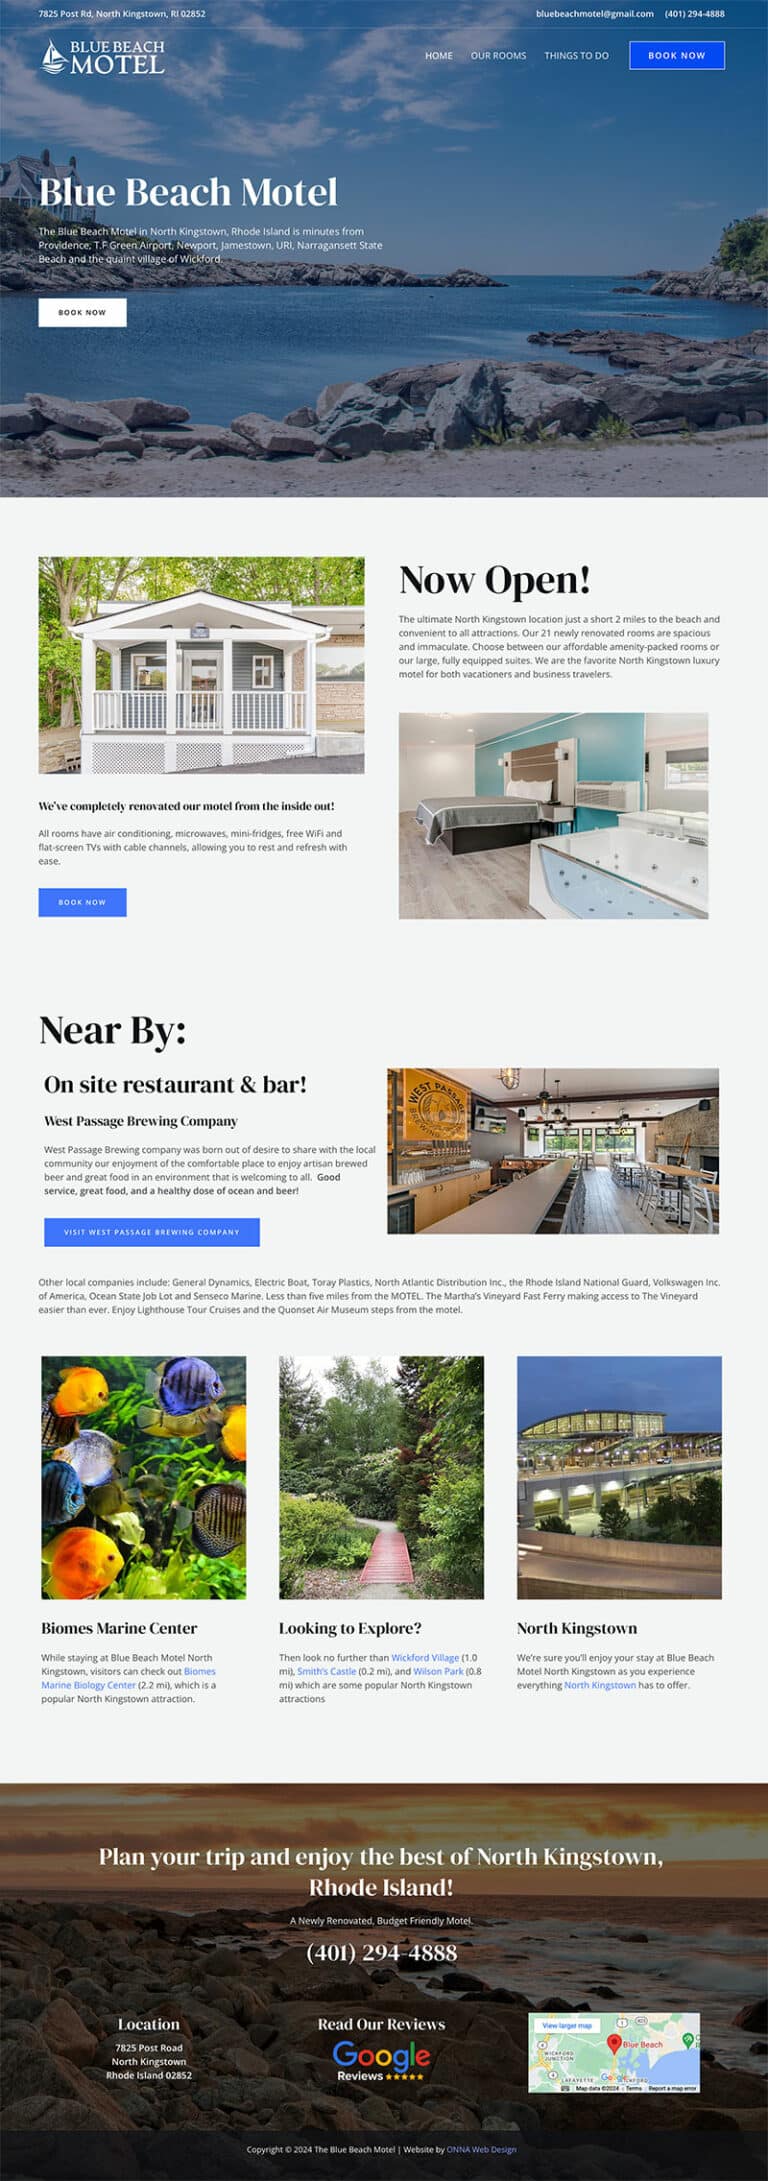 Screenshot of Blue Beach Motel's new website